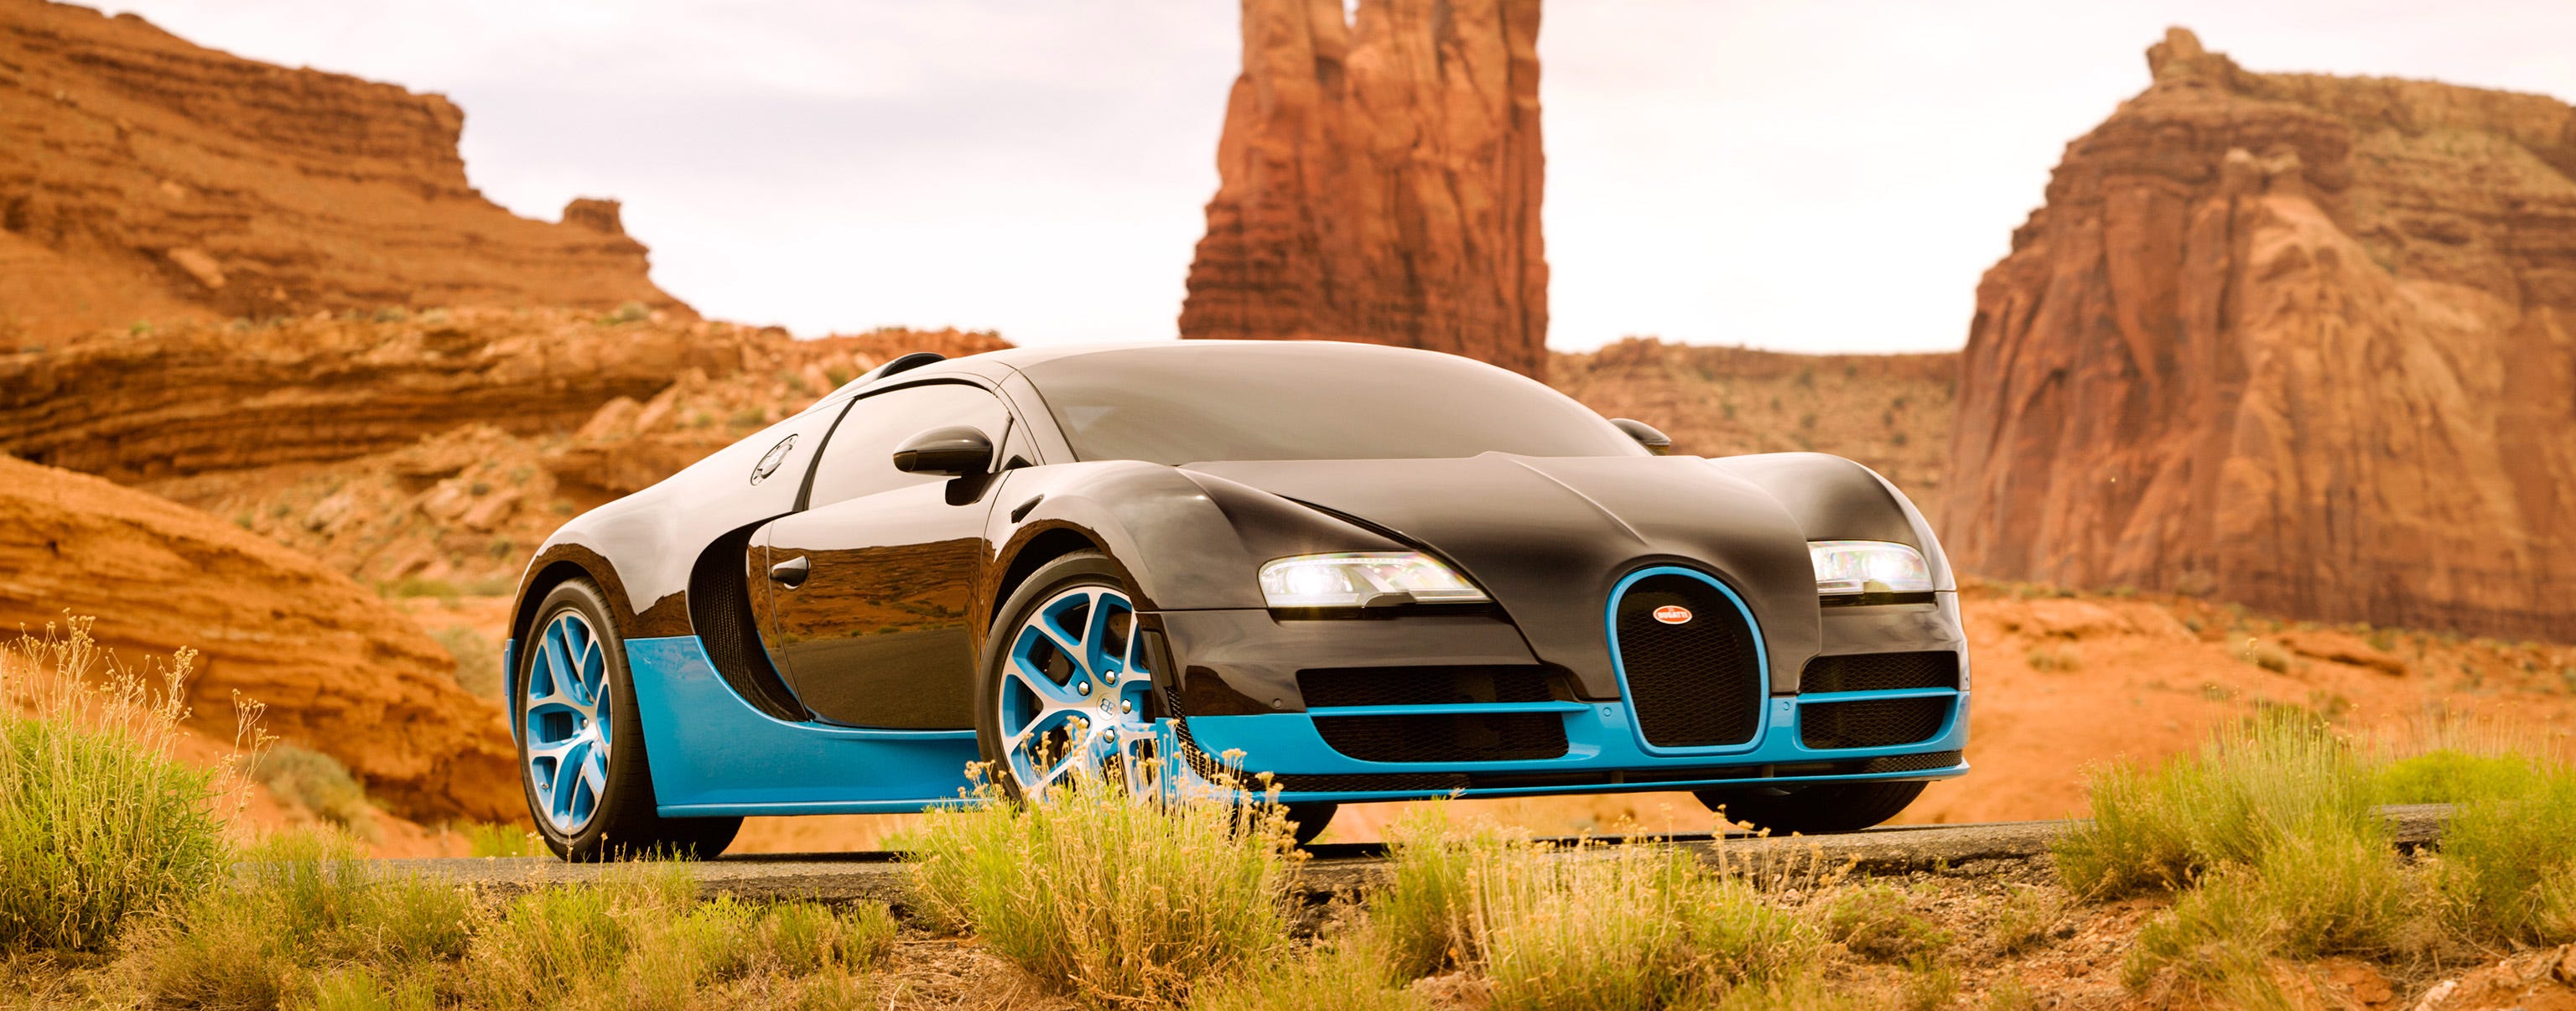 Transformers' Bugatti